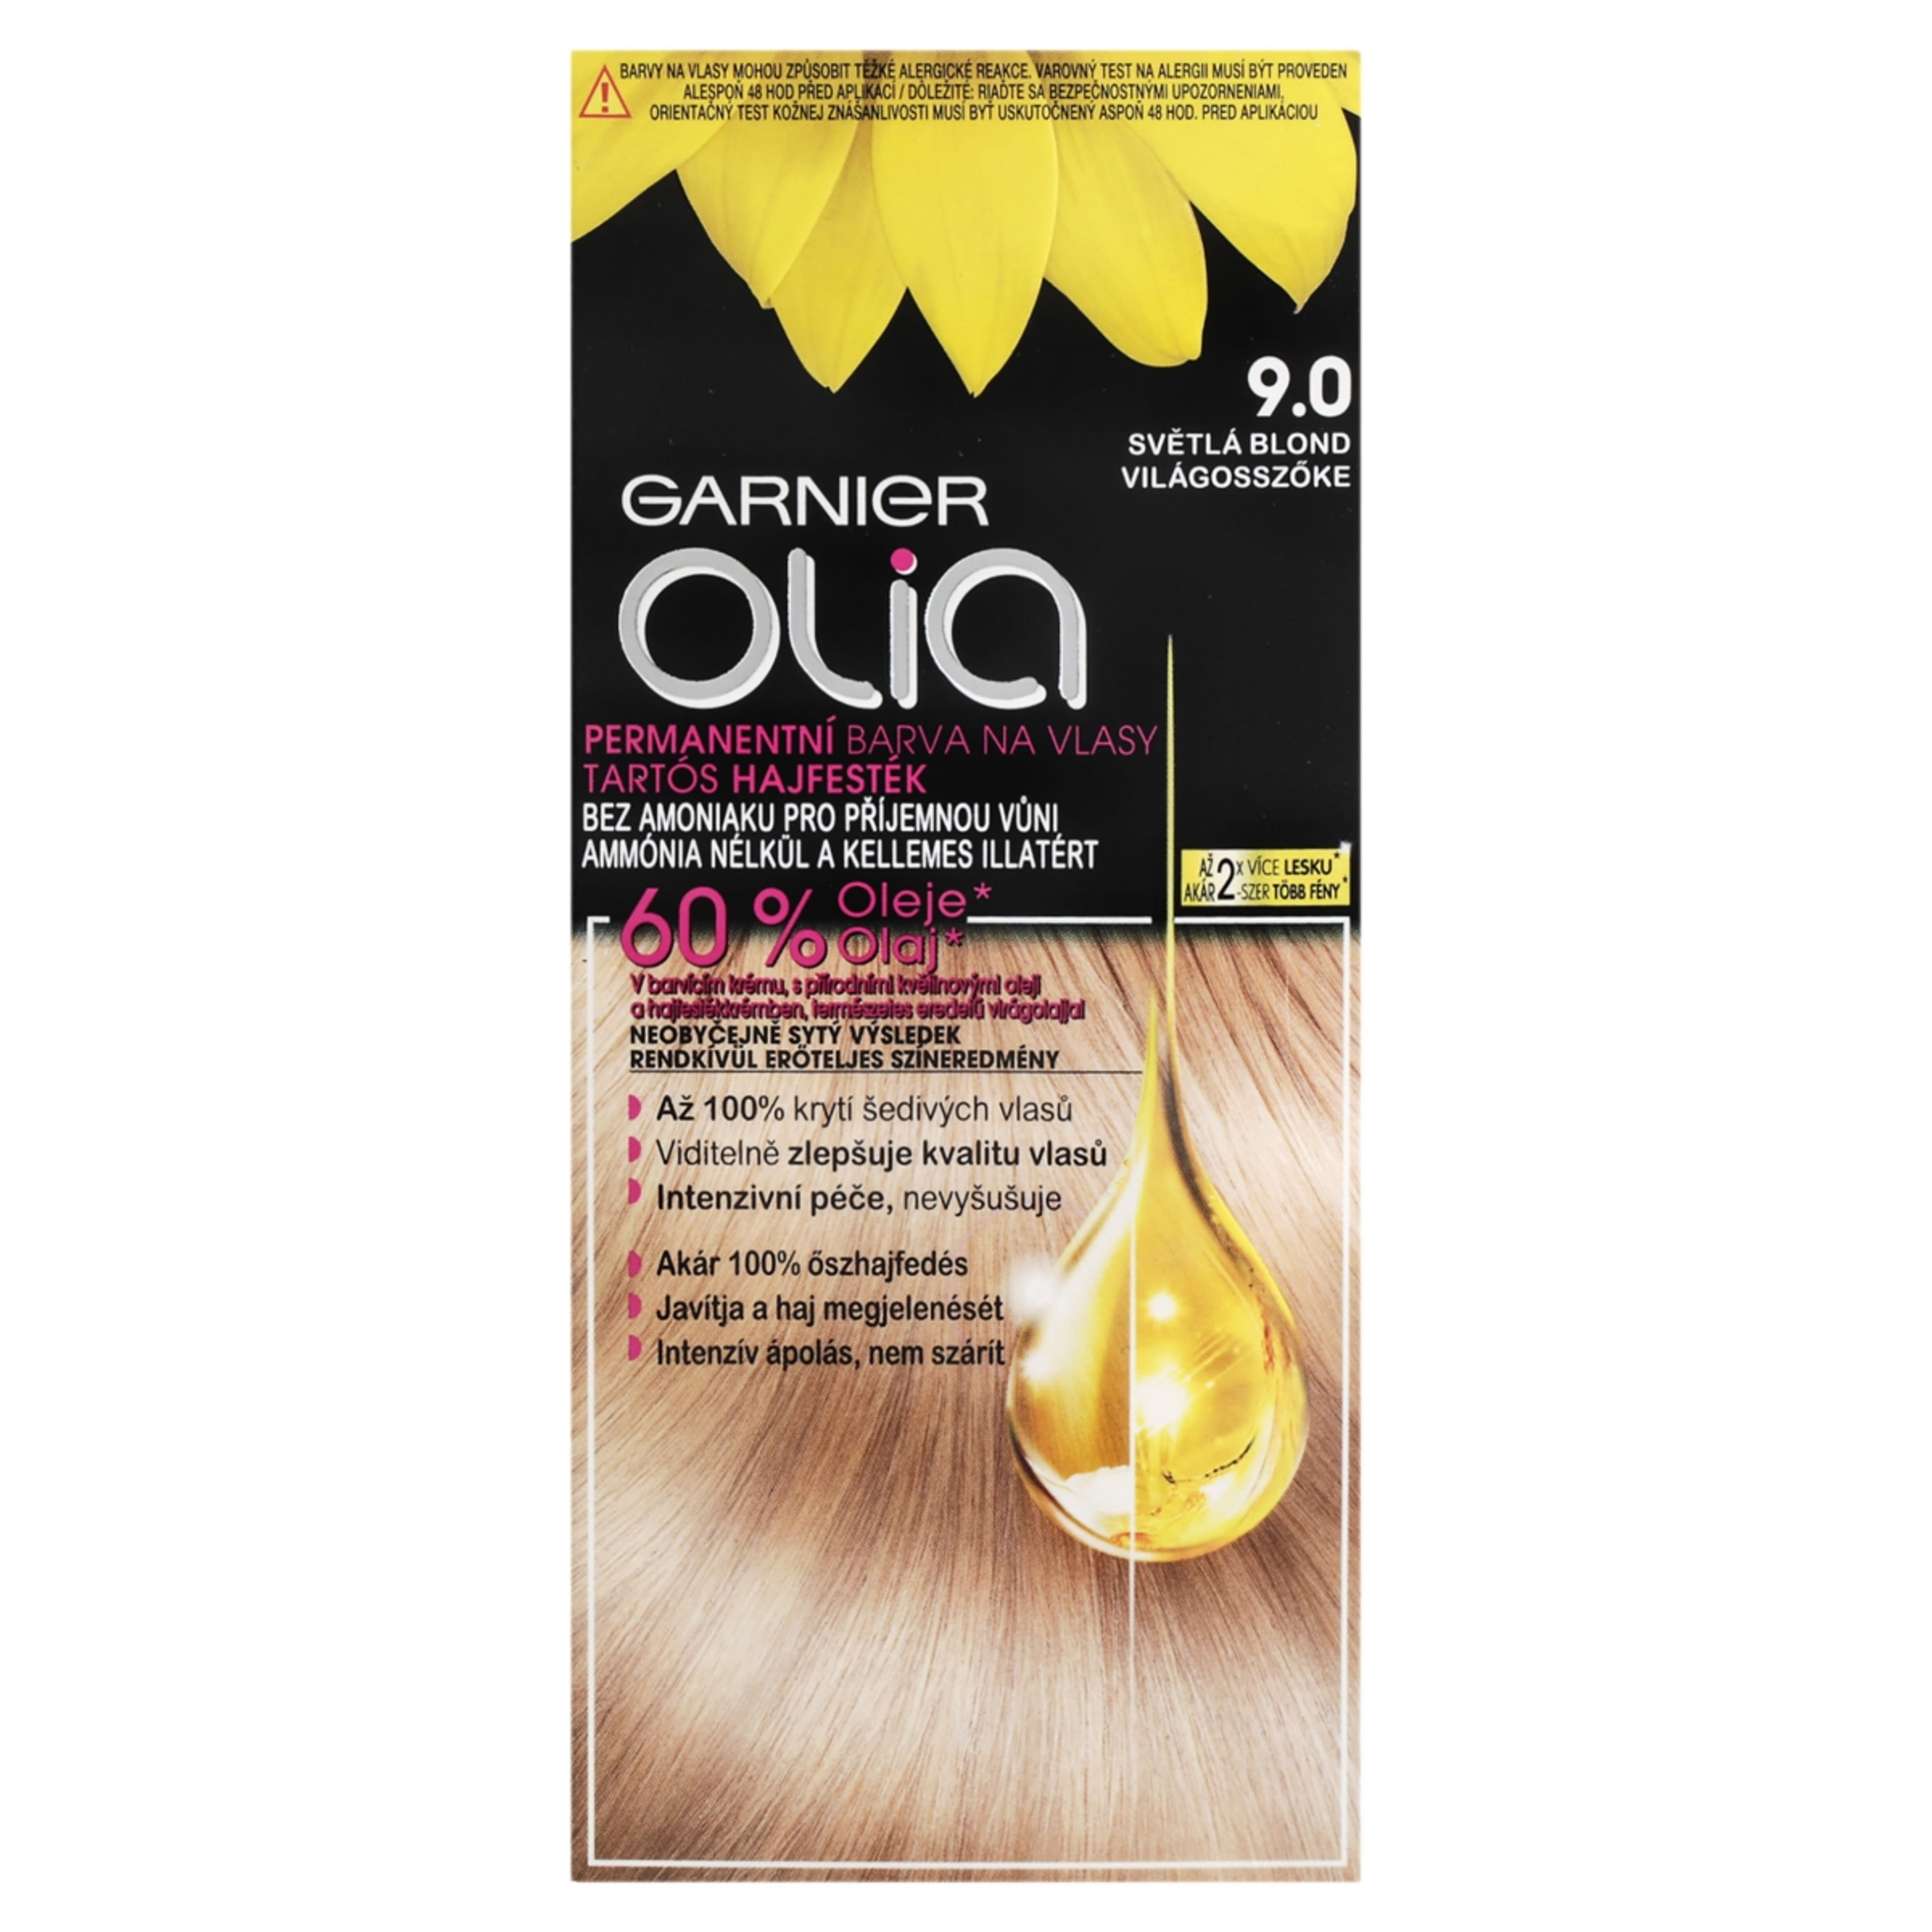 Garnier Olia tartós hajfesték 9.0 Világosszőke - 1 db-3